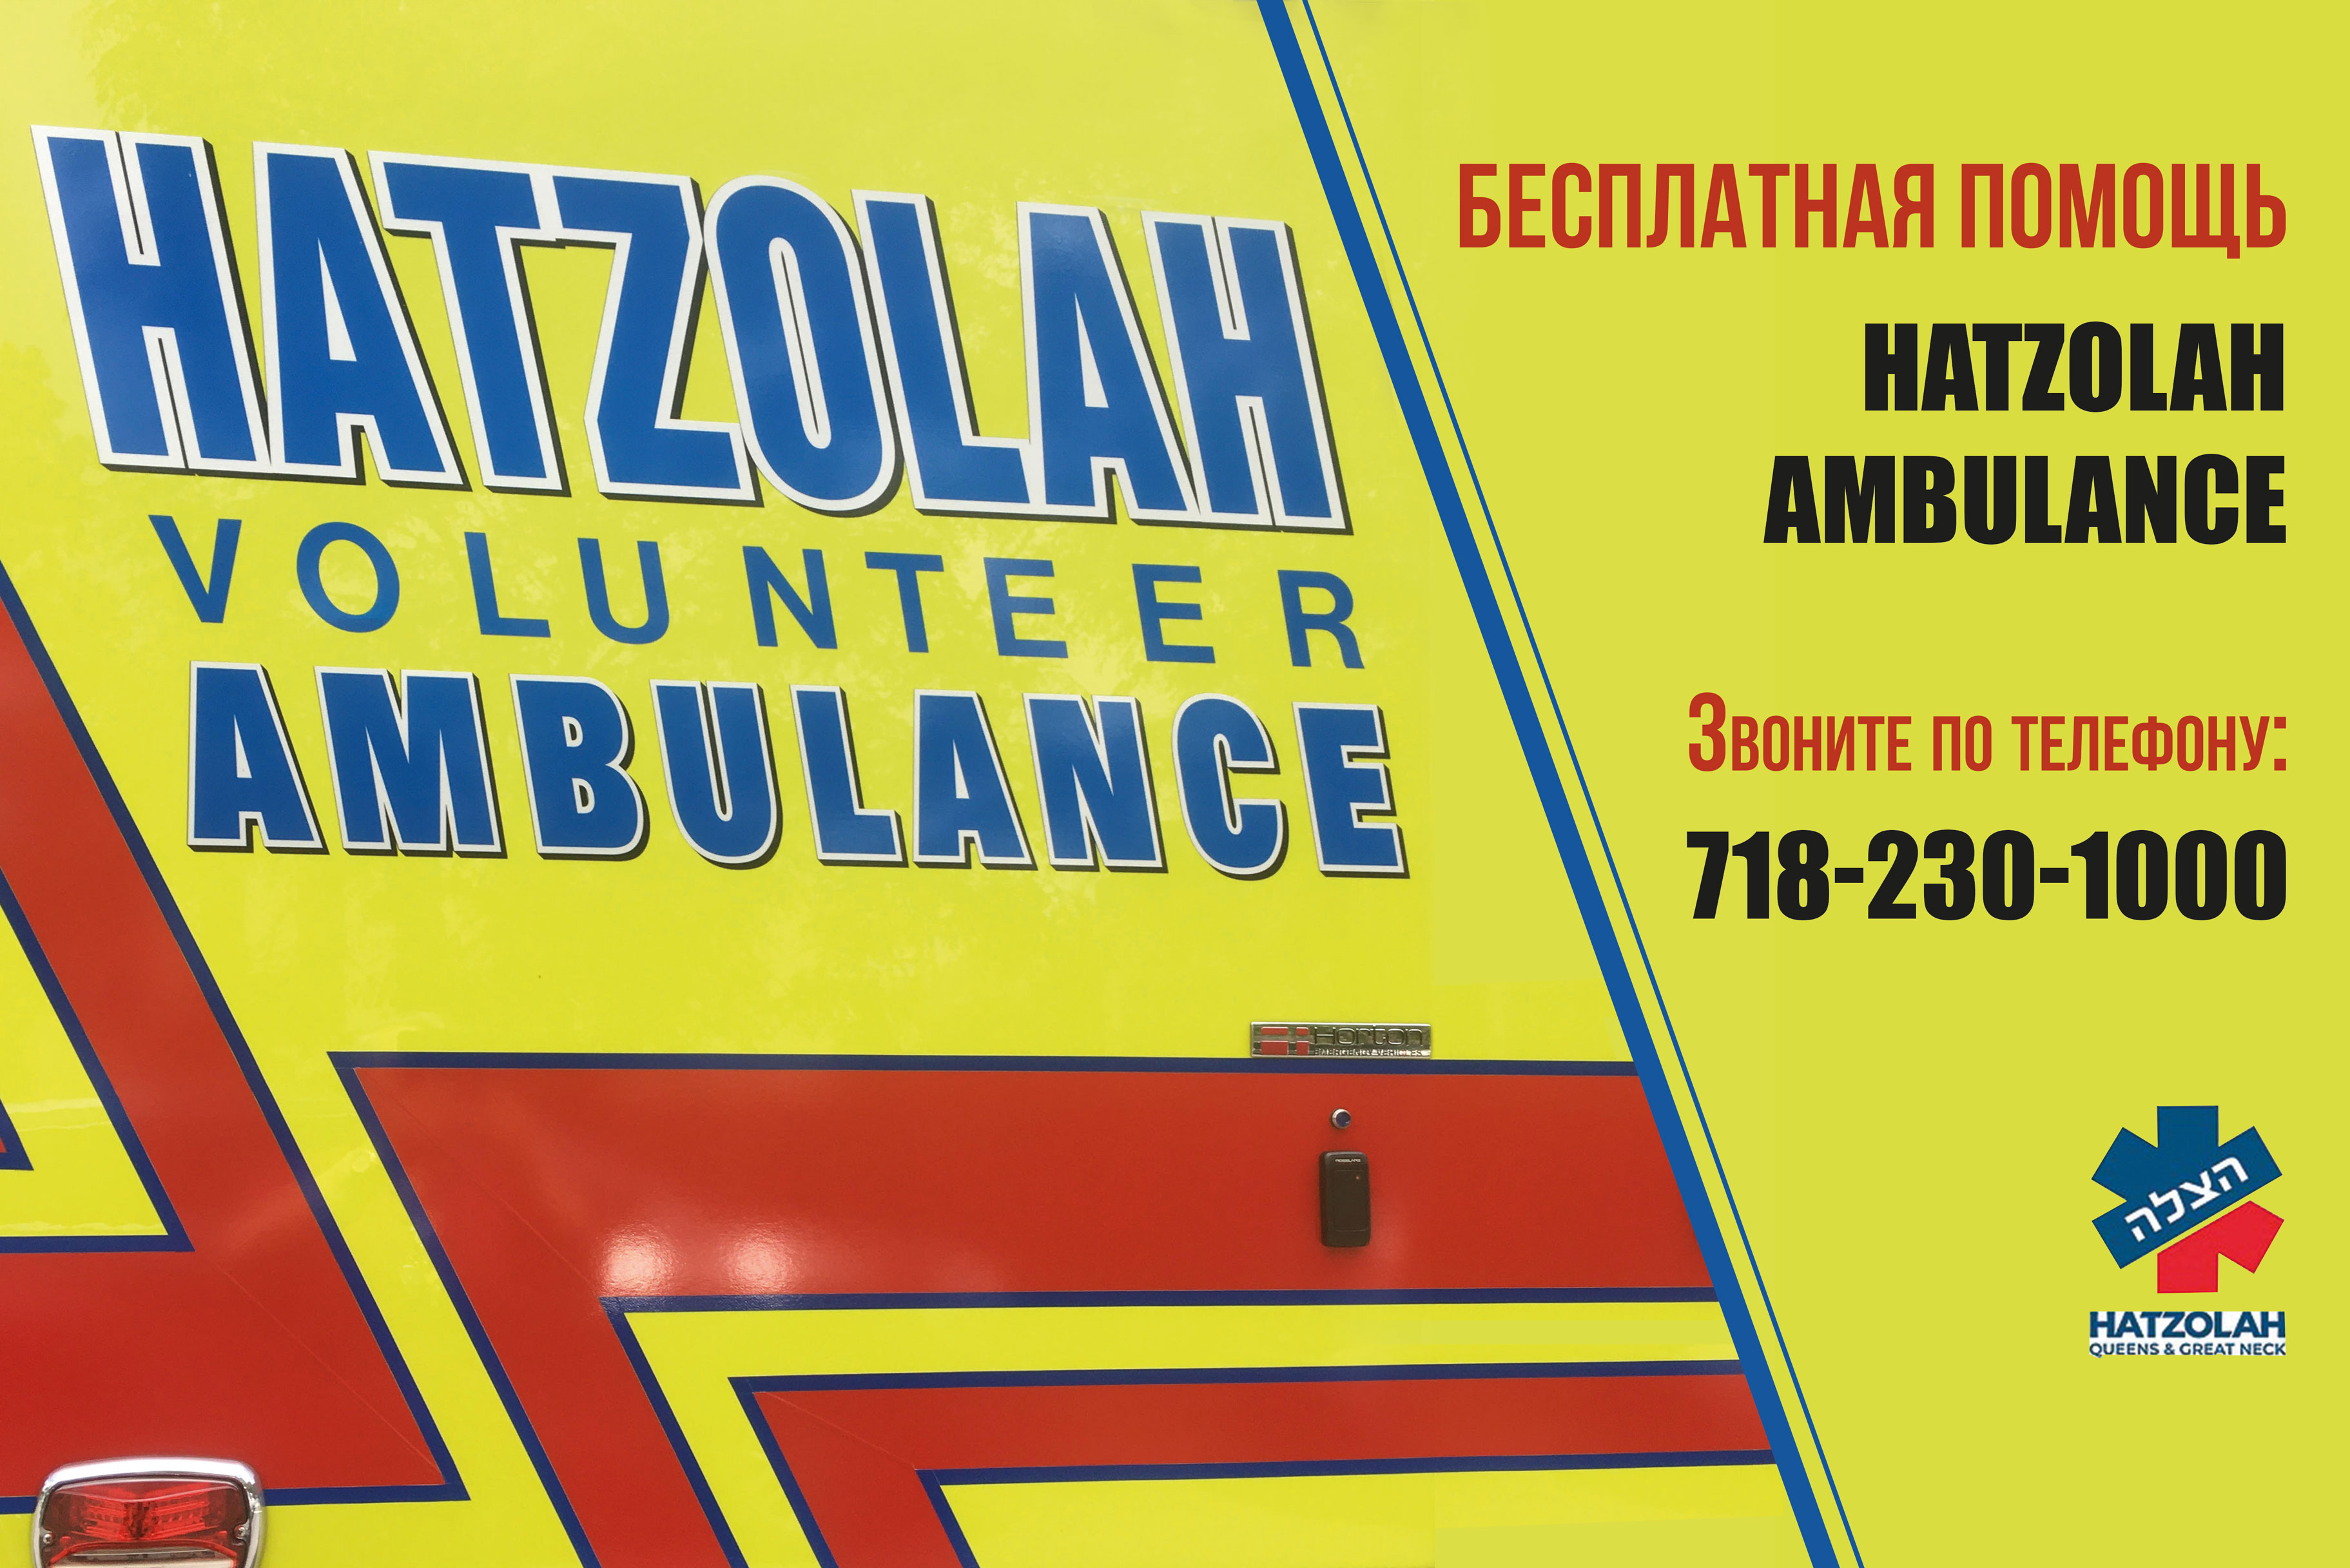 Hatzolah ambulance